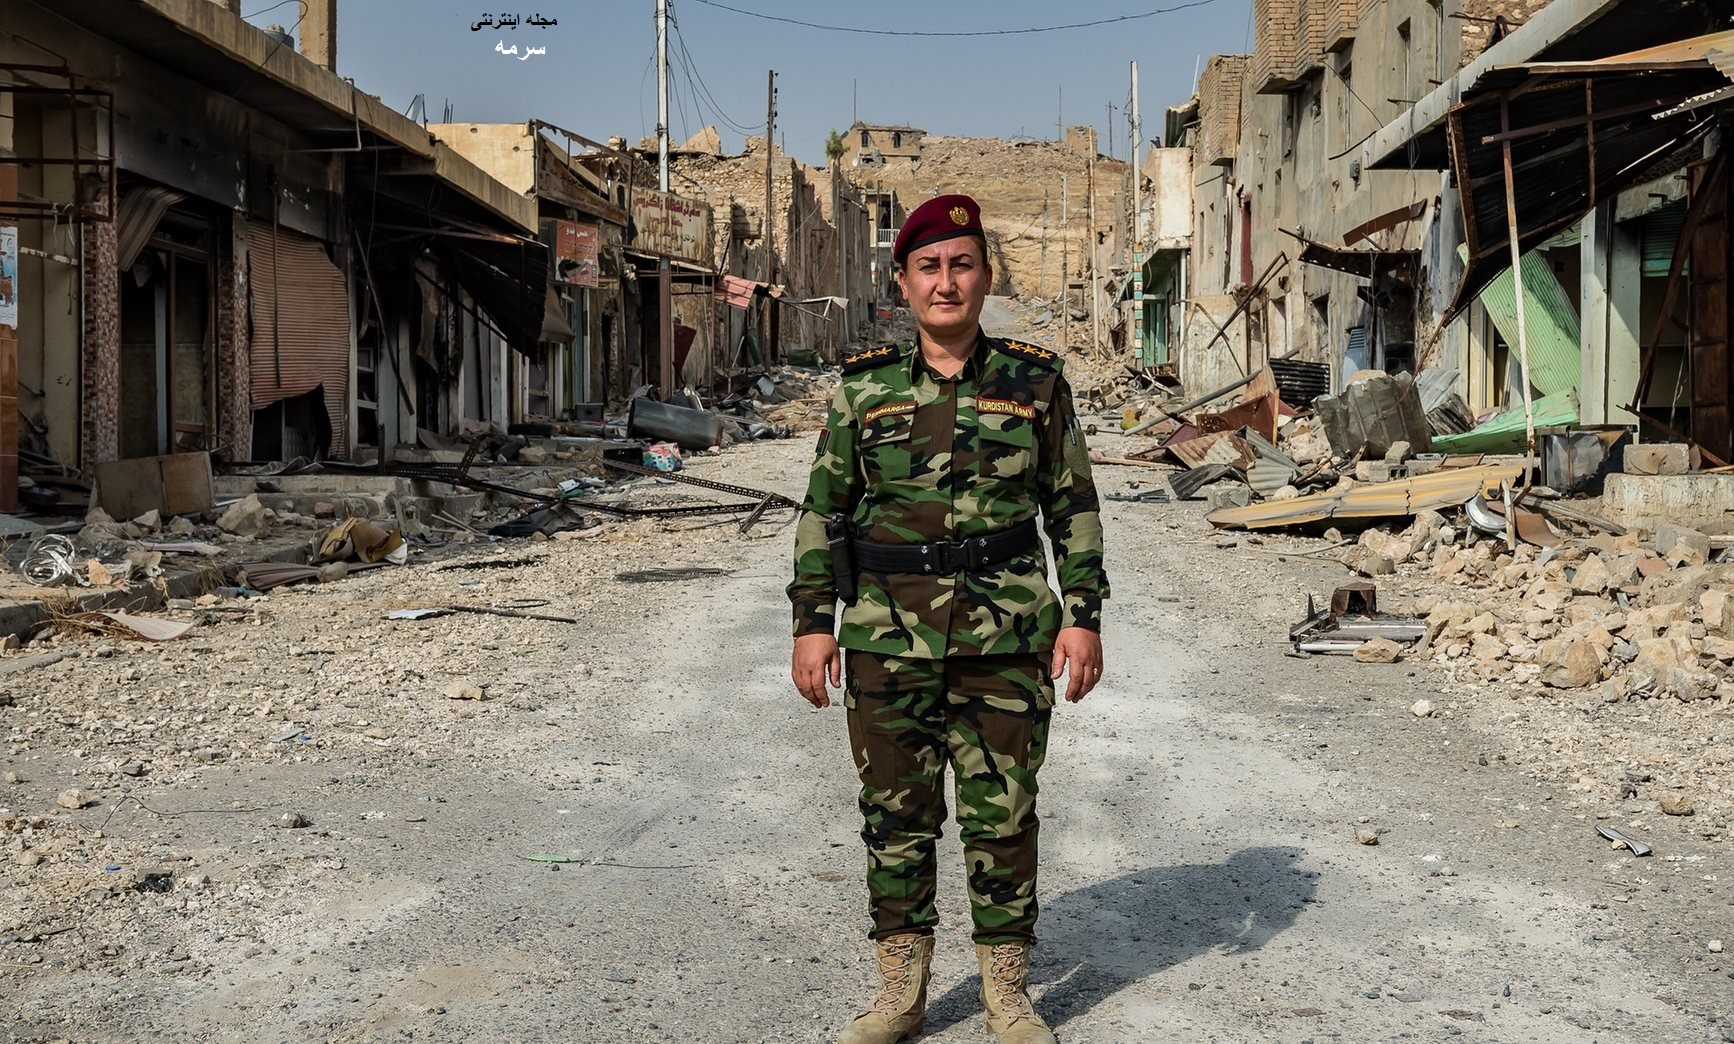 زن خواننده فرمانده گردان مبارزه با داعش شد + عکس